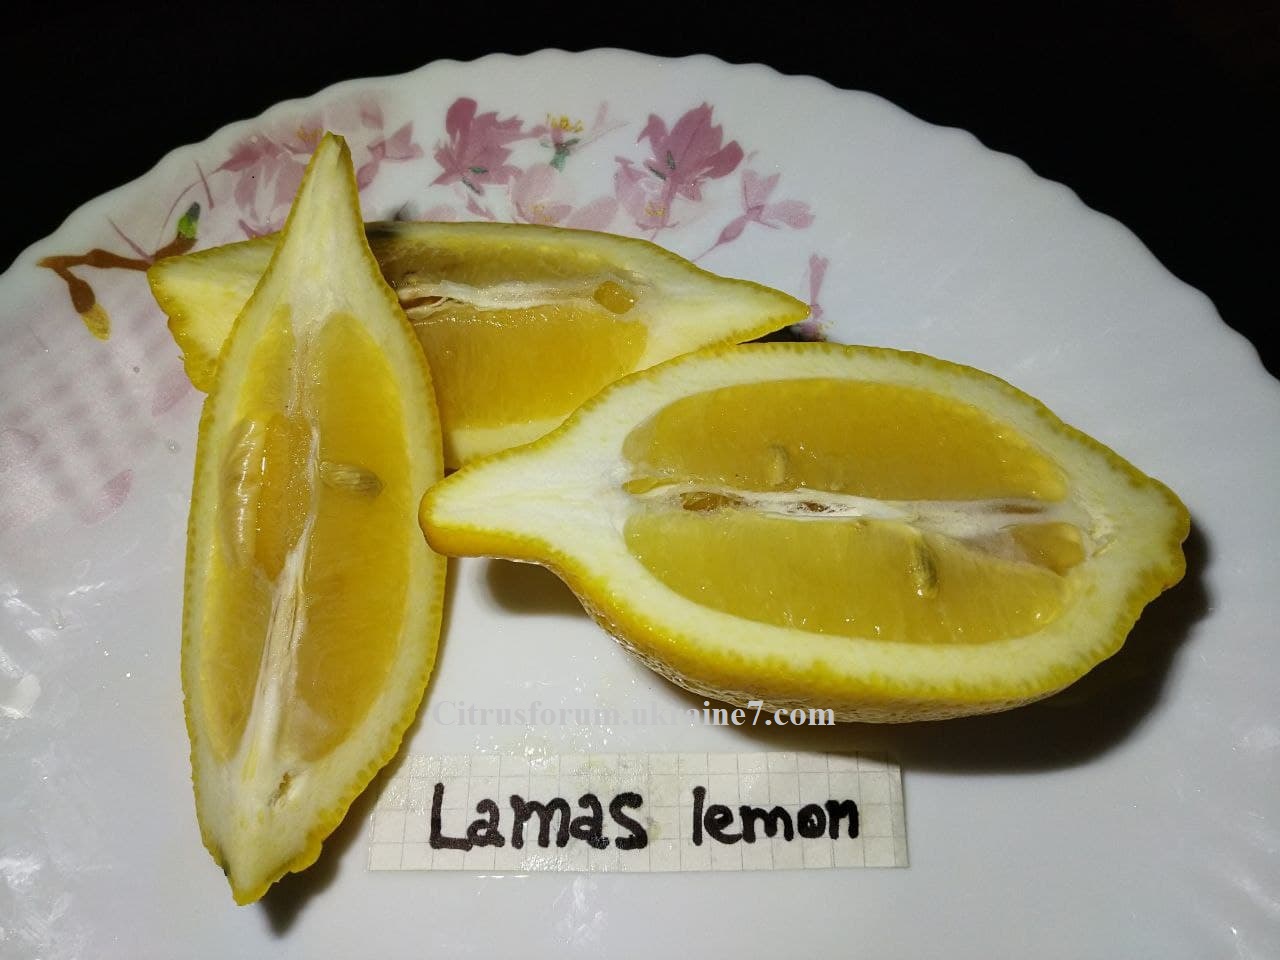 Lamas lemon Lamas_11